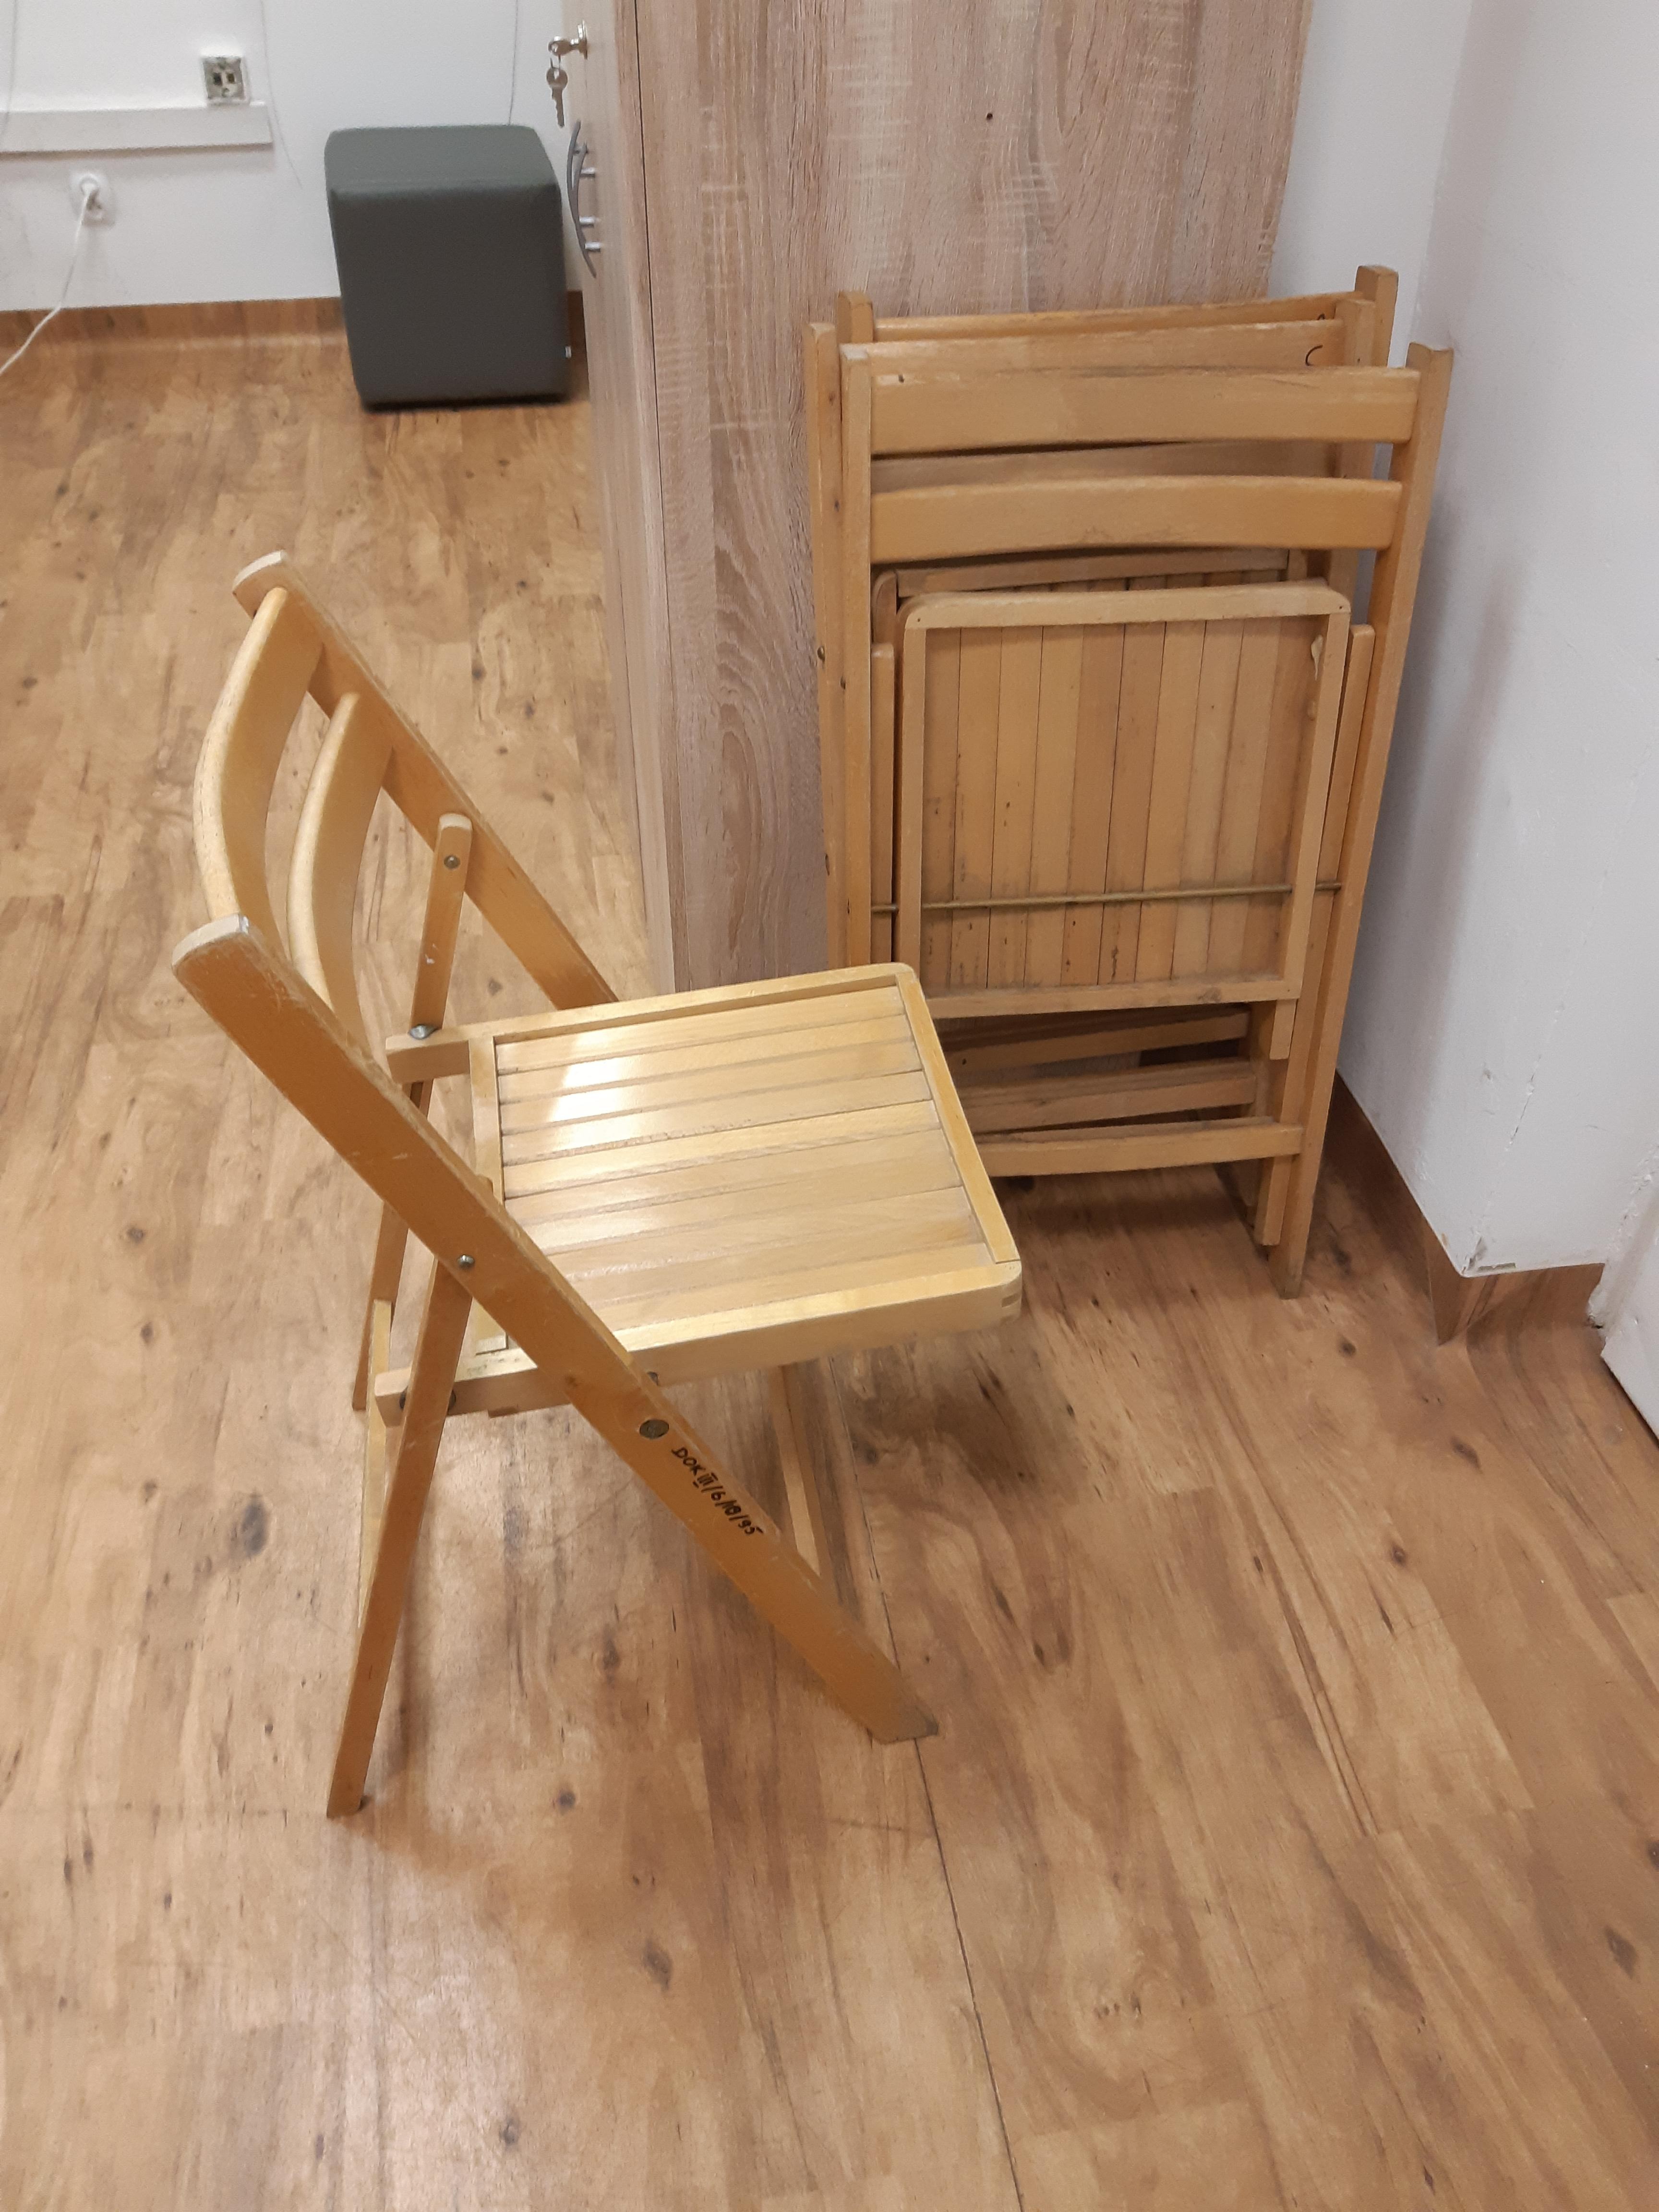 Rozłożone drewniane krzesło i dwa złożone, oparte o ścianę.